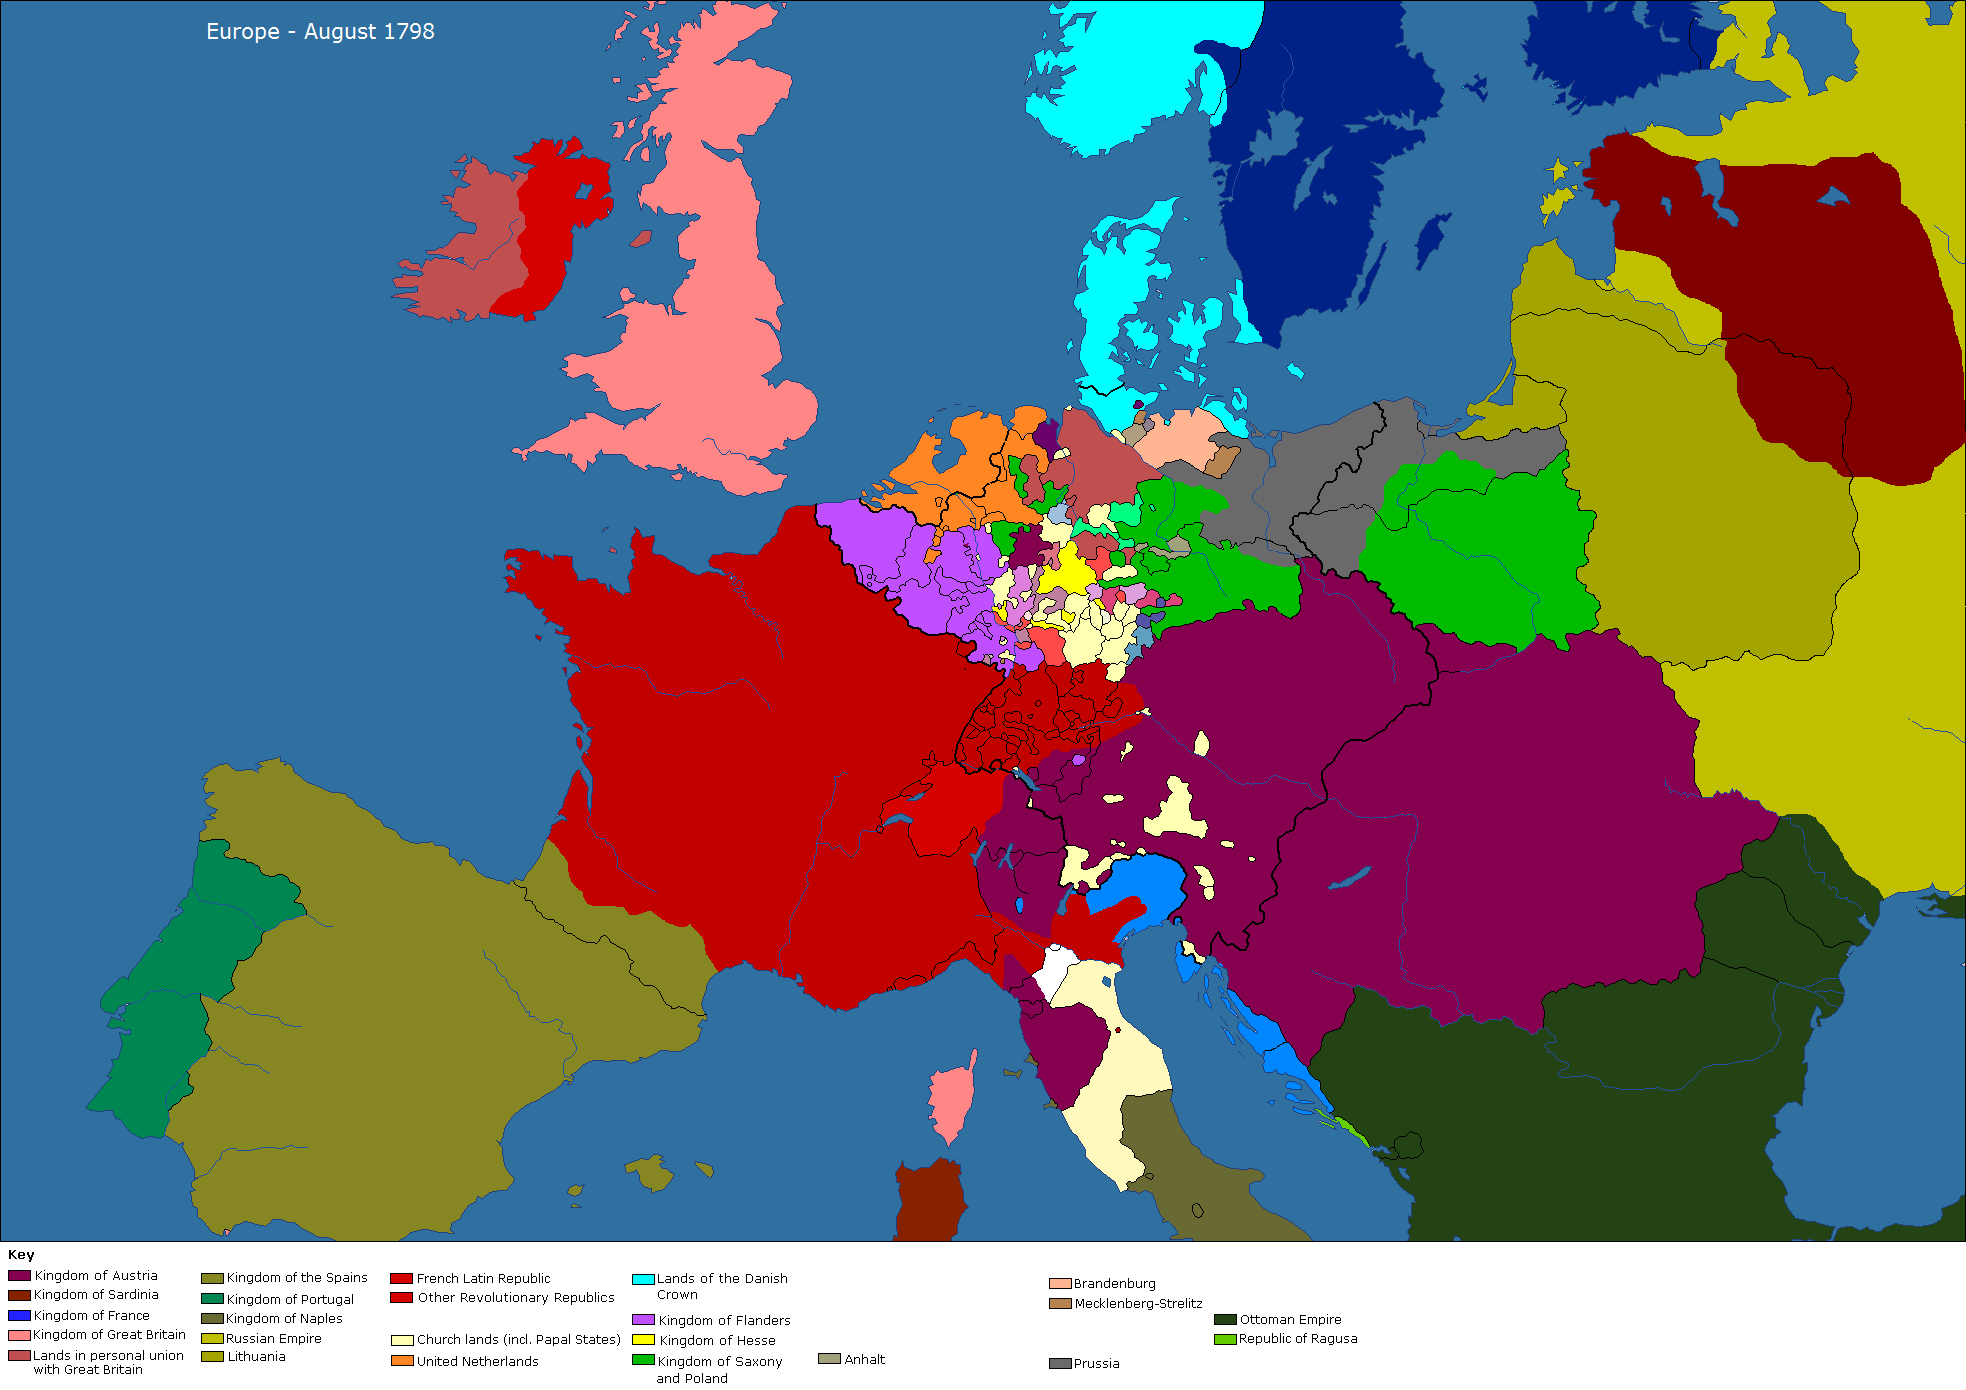 Карта европы 1812 года на русском языке